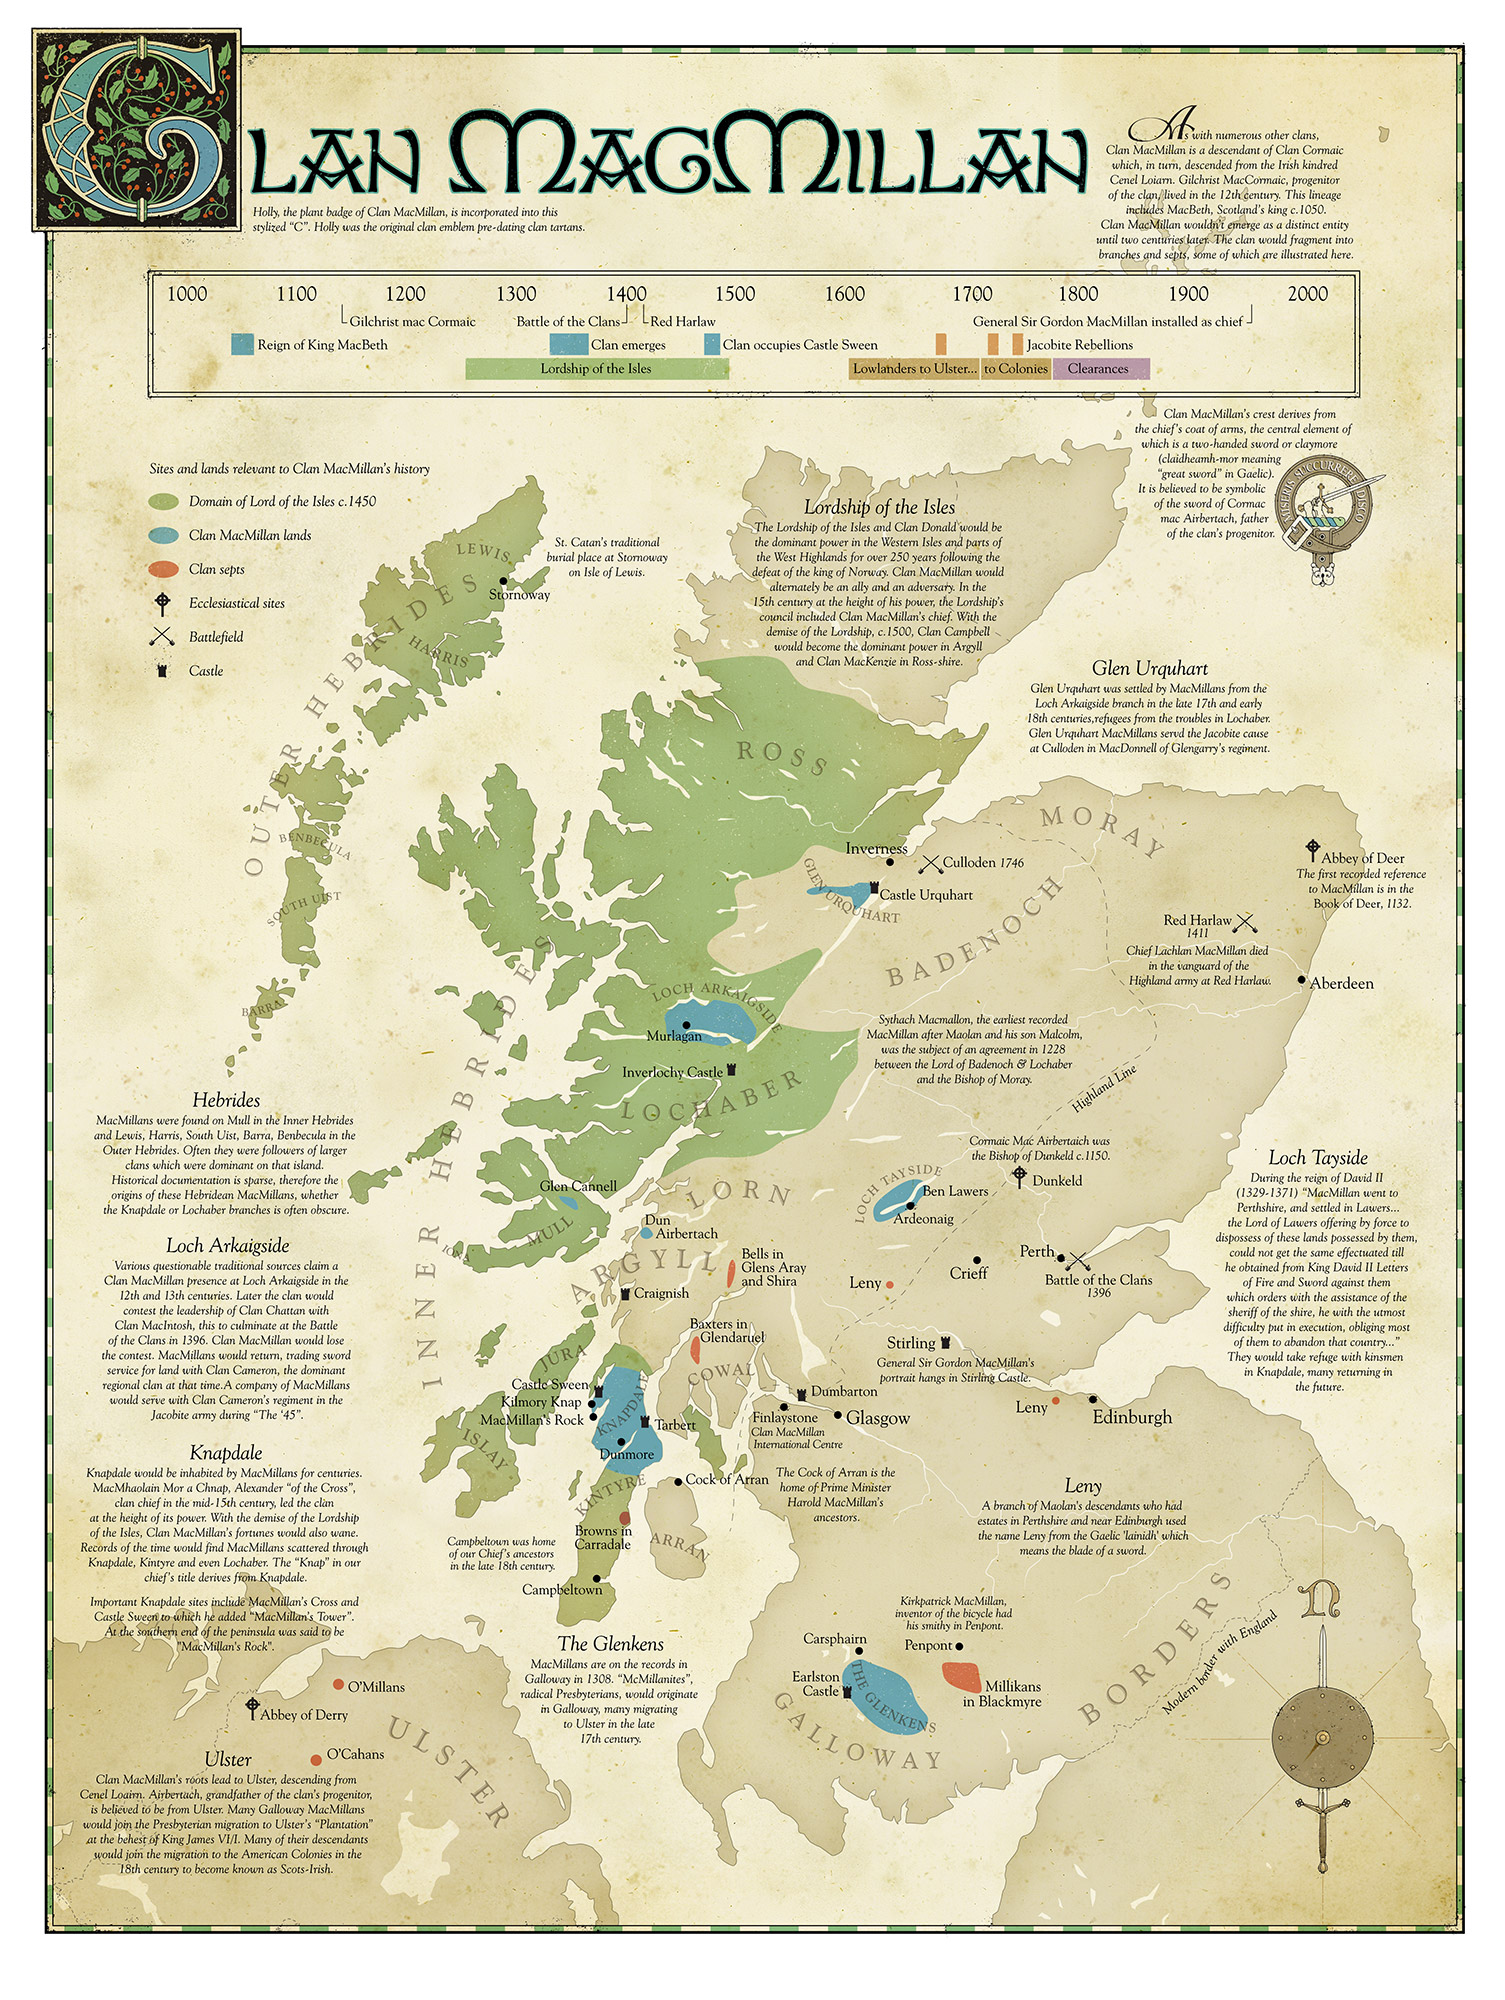 Map of Clan MacMillan lands and landmarks